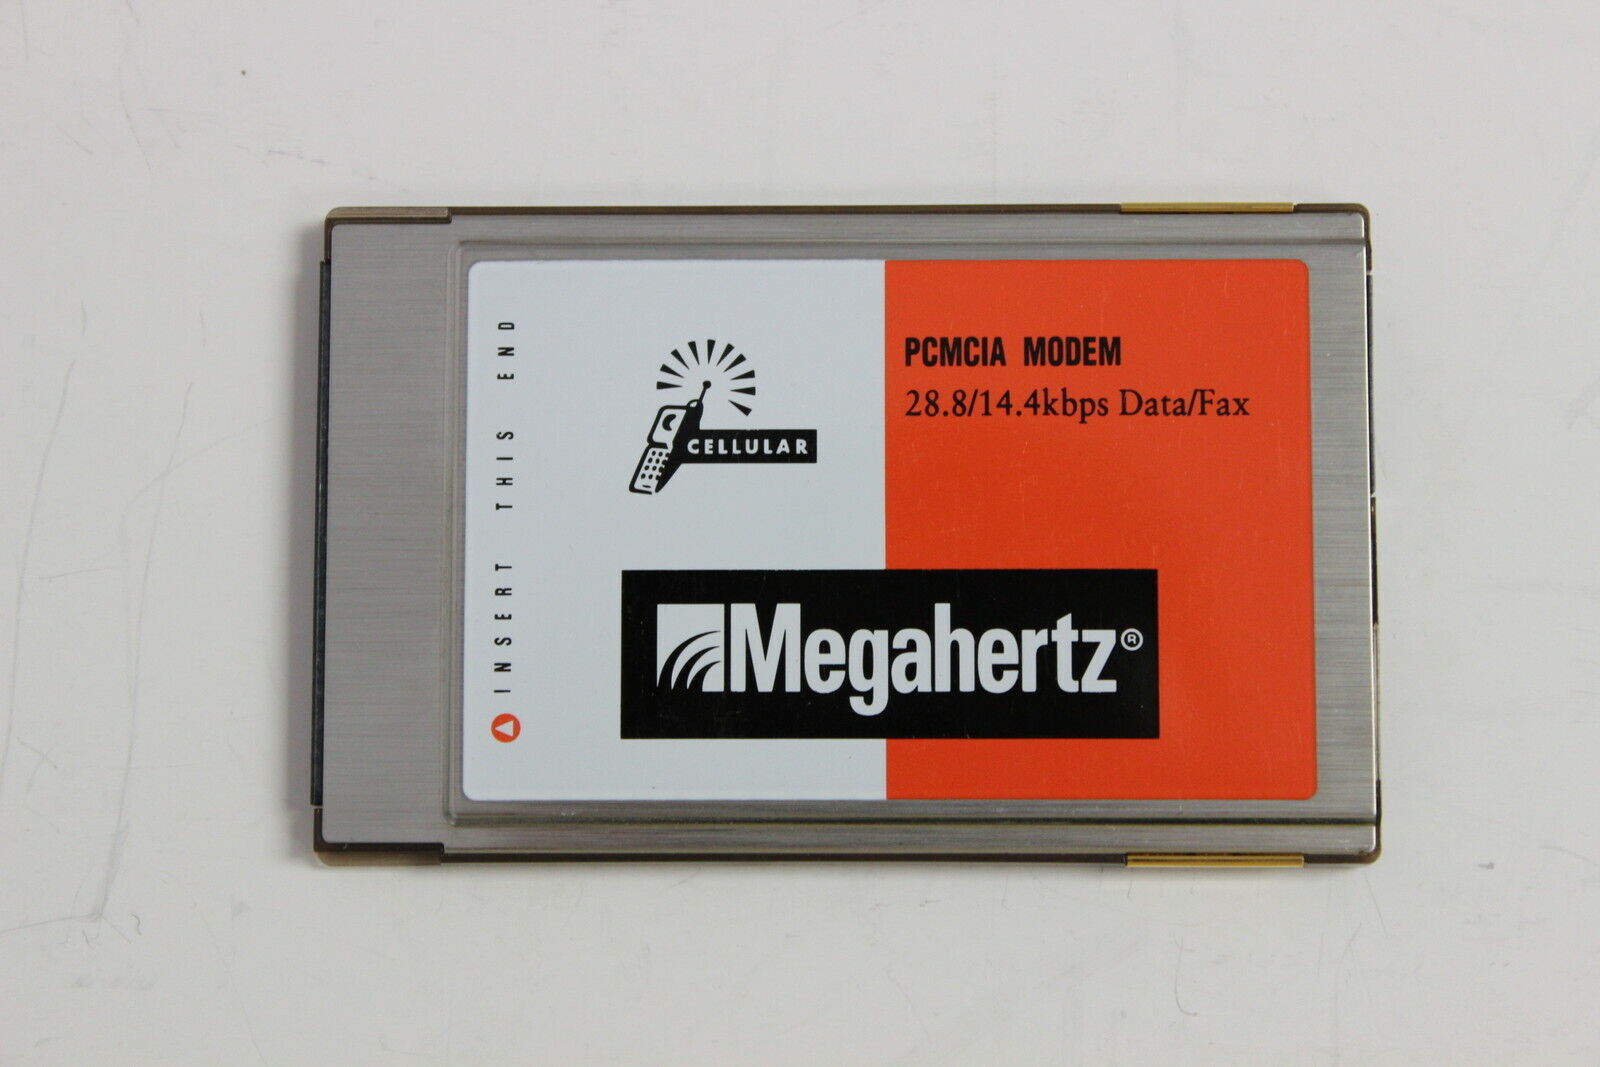 MEGAHERTZ CC6288 PCMCIA MODEM 28.8/14.4 KBPS DATA/FAX